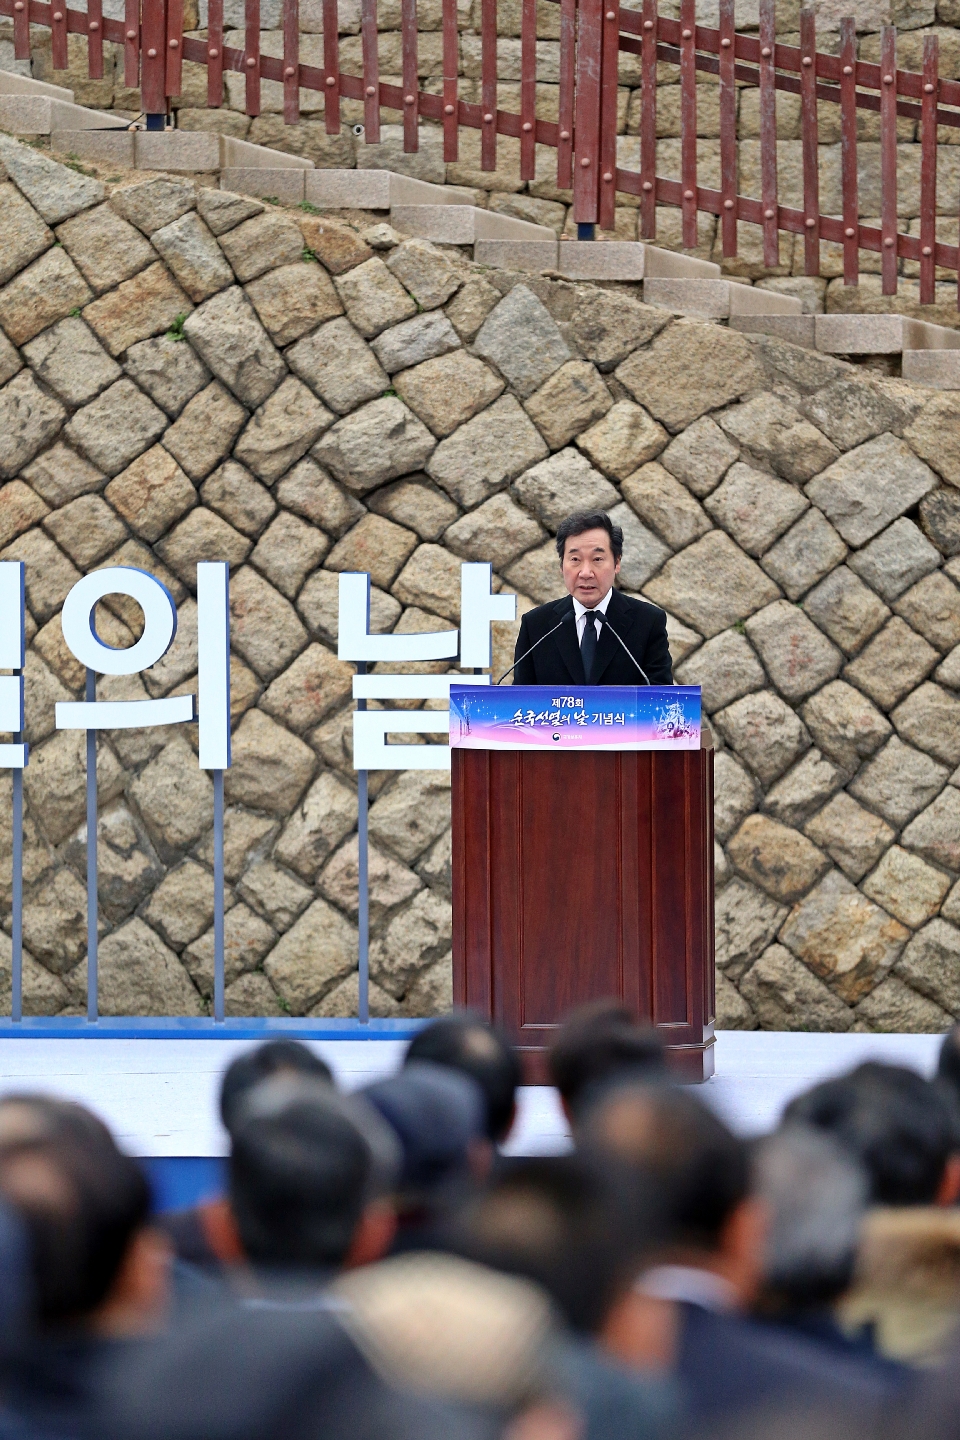 11월 17일 오전 서울 서대문형무소 역사관에서 열린 제78회 순국선열의 날 기념식에서 이낙연 국무총리가 참석하여 기념사를 하고 있다.